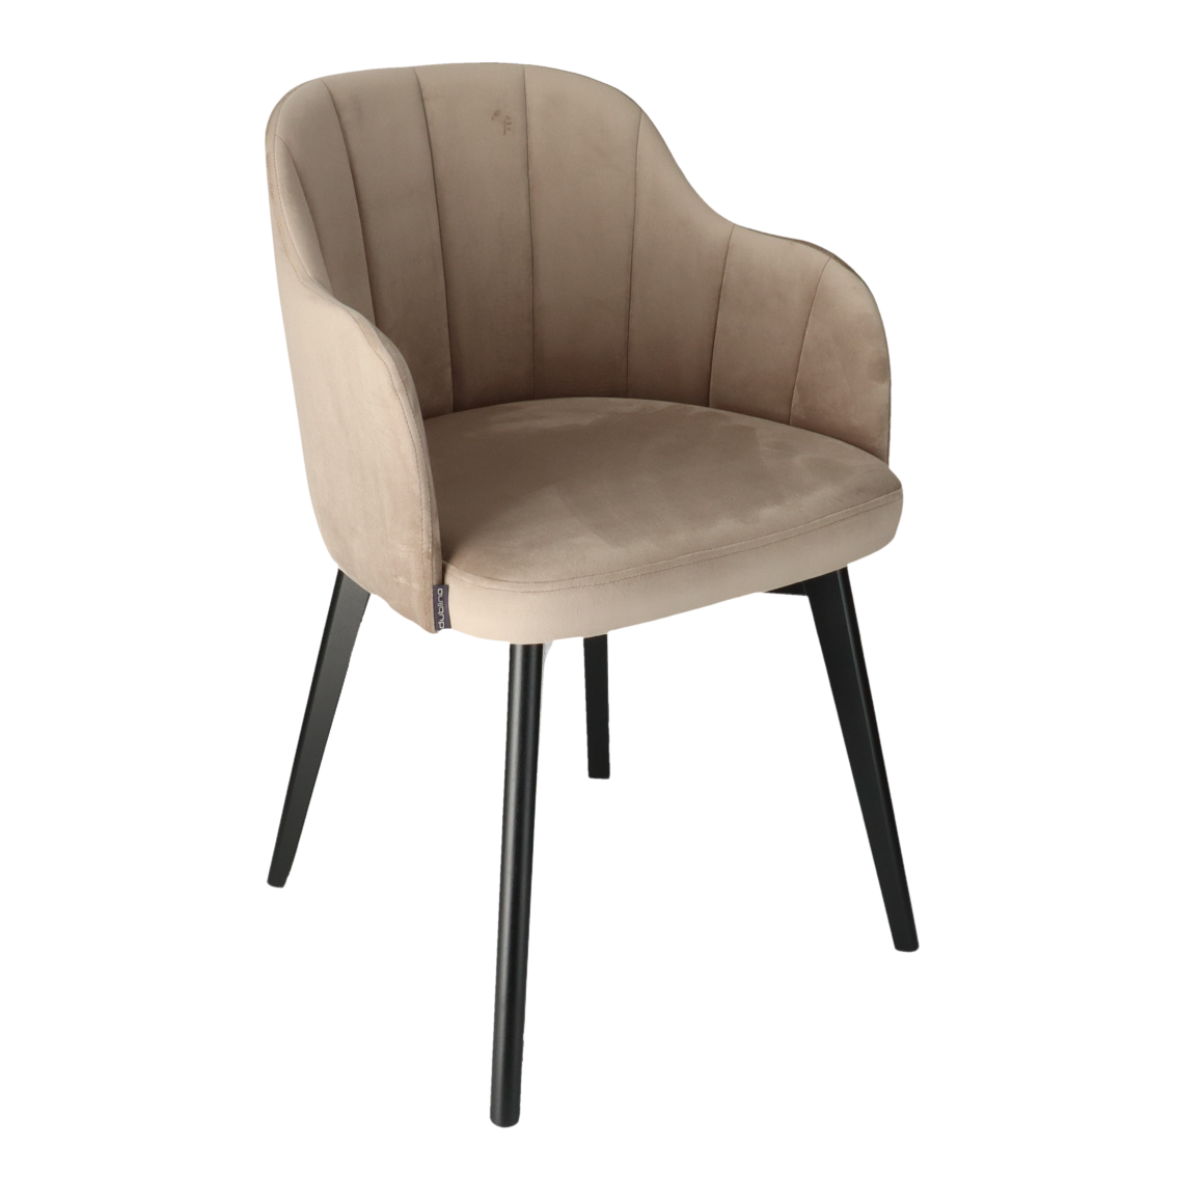 T NIKOL Bézs design Kárpitos beltéri szék